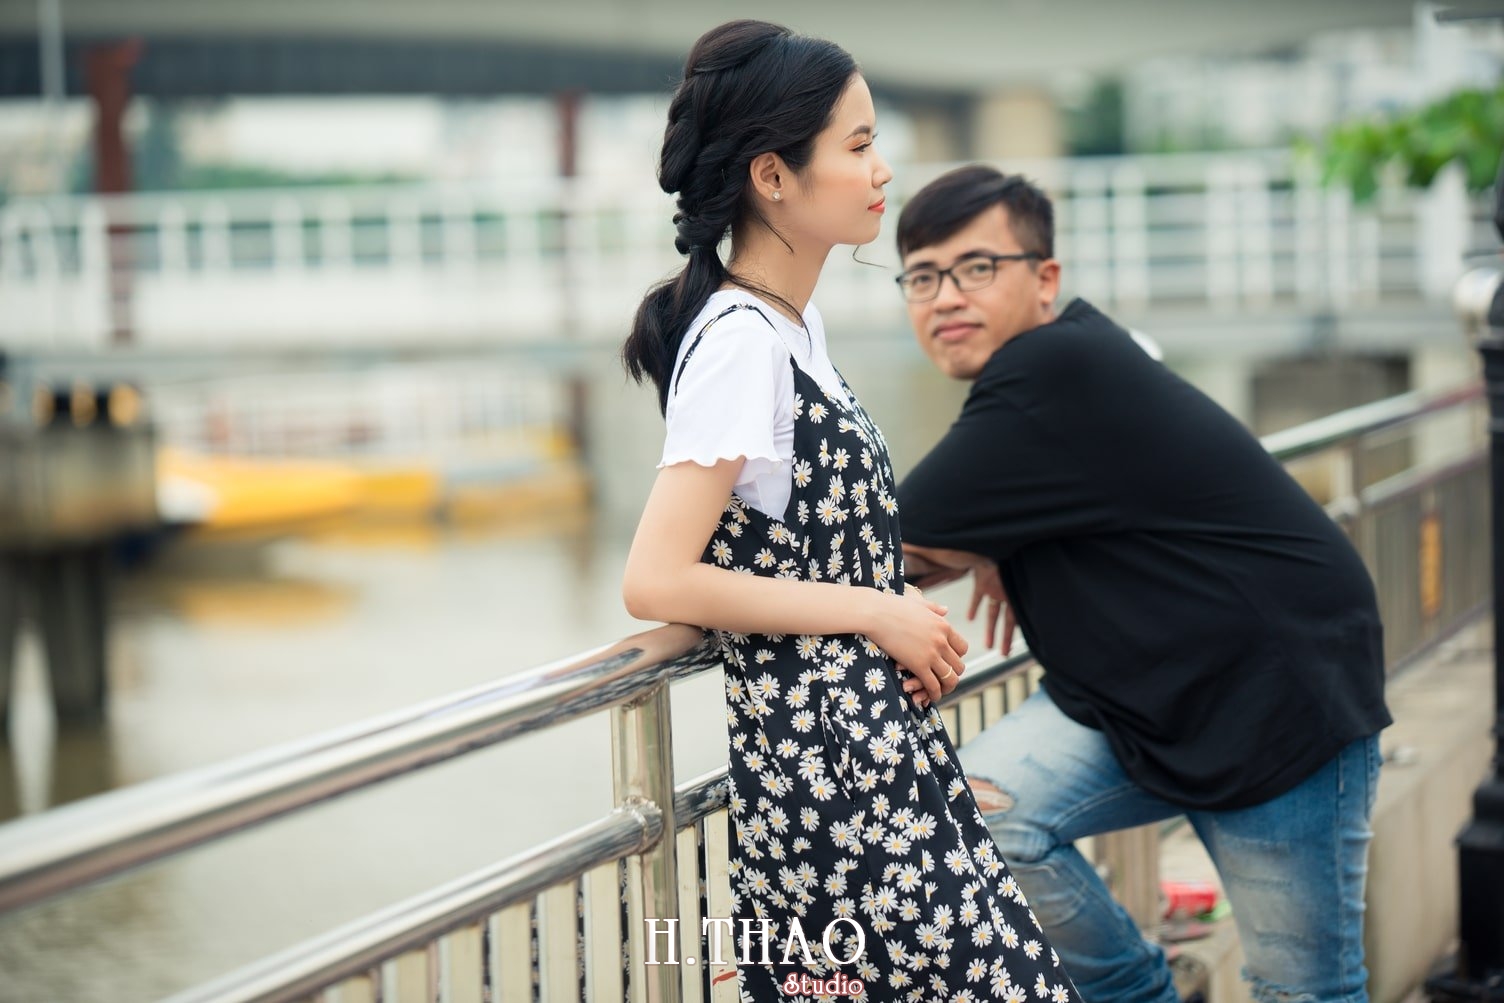 Bộ Ảnh Couple Rất Đáng Yêu Chụp Tại Bến Tàu Ở Tp.Hcm – Hthao Studio